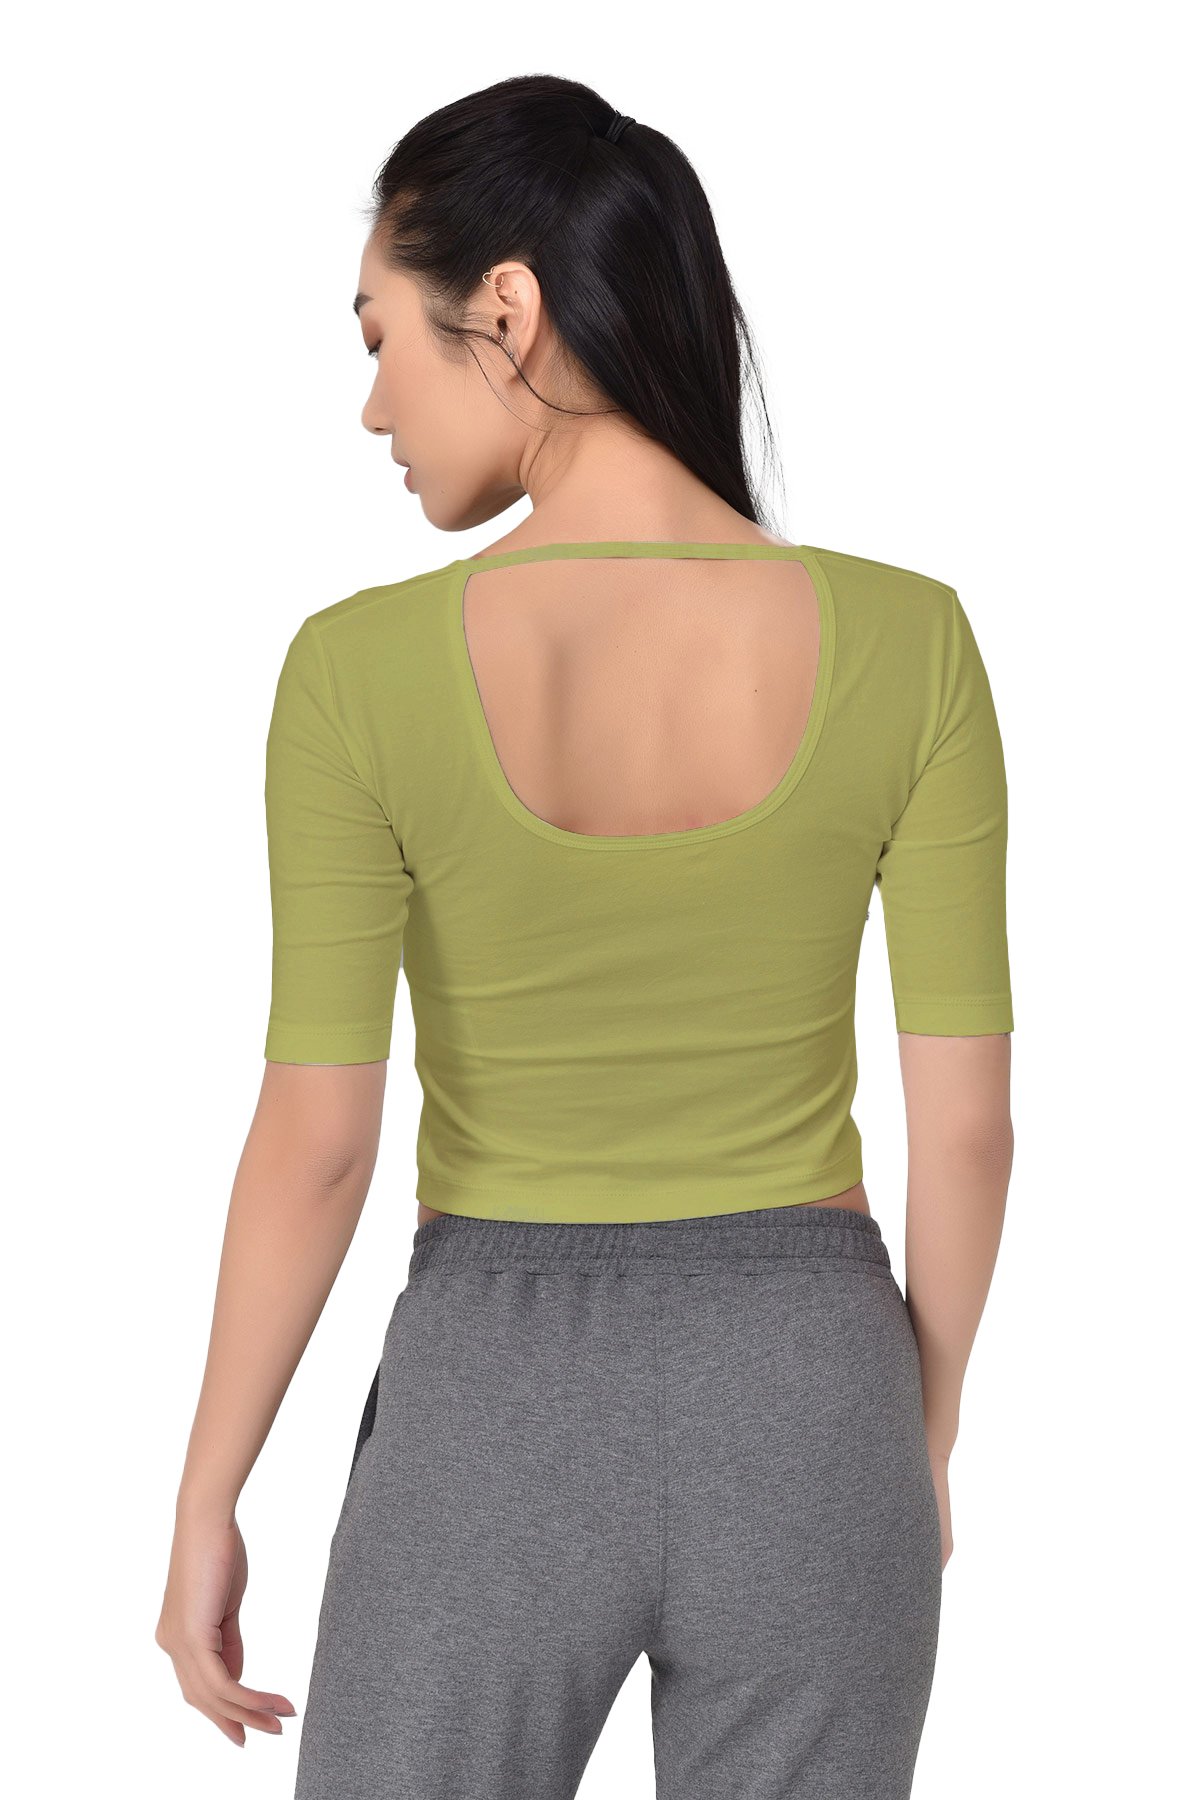 Açık Yeşil Kadın V Yaka Sırt Detaylı Yarım Kol Pamuklu Yoga Spor Tişört 8105 - 2